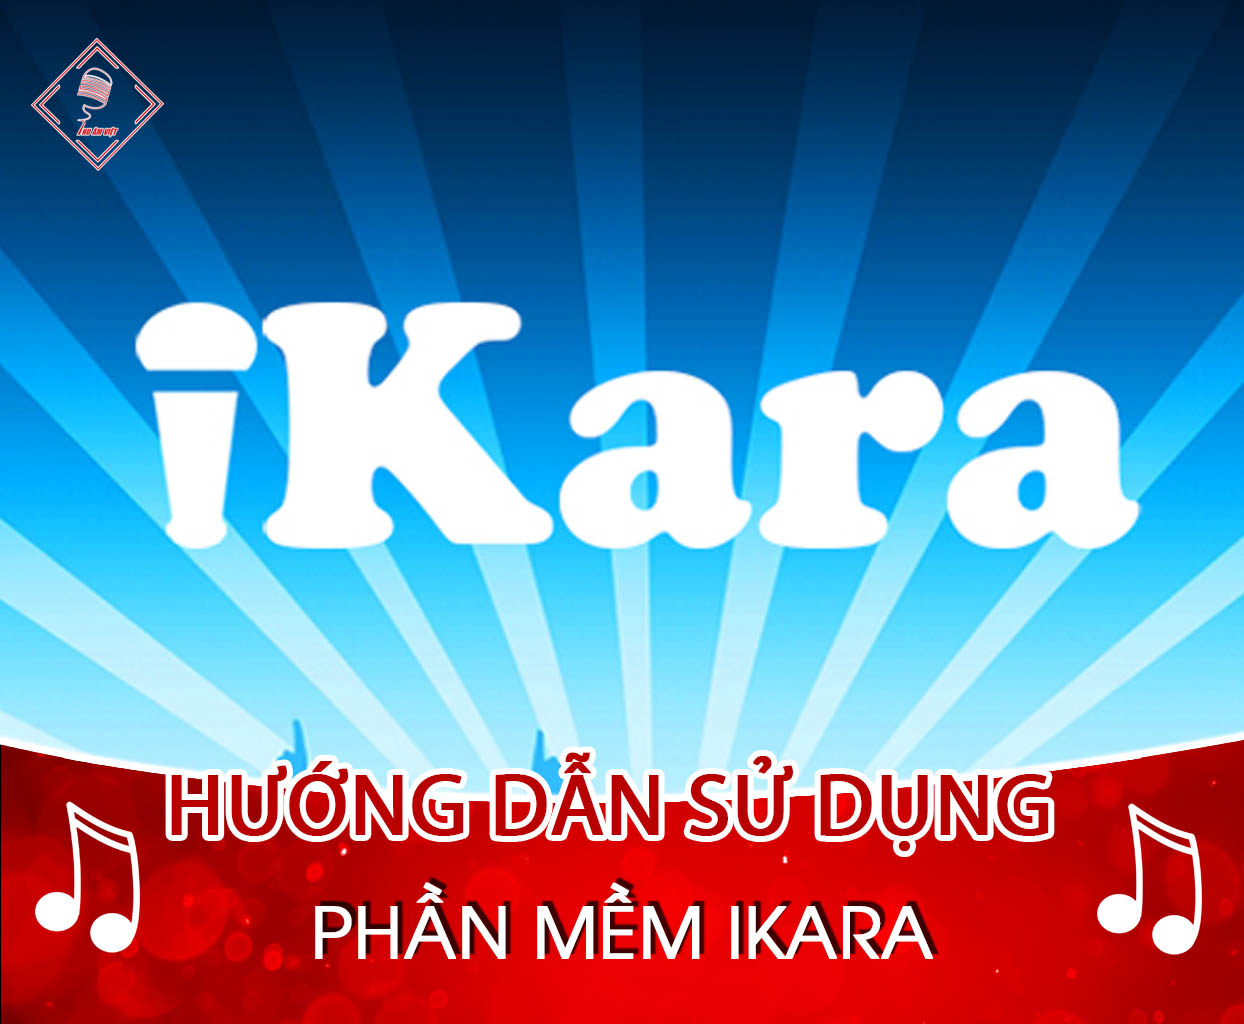 Hướng dẫn thu âm bằng phần mềm ikara